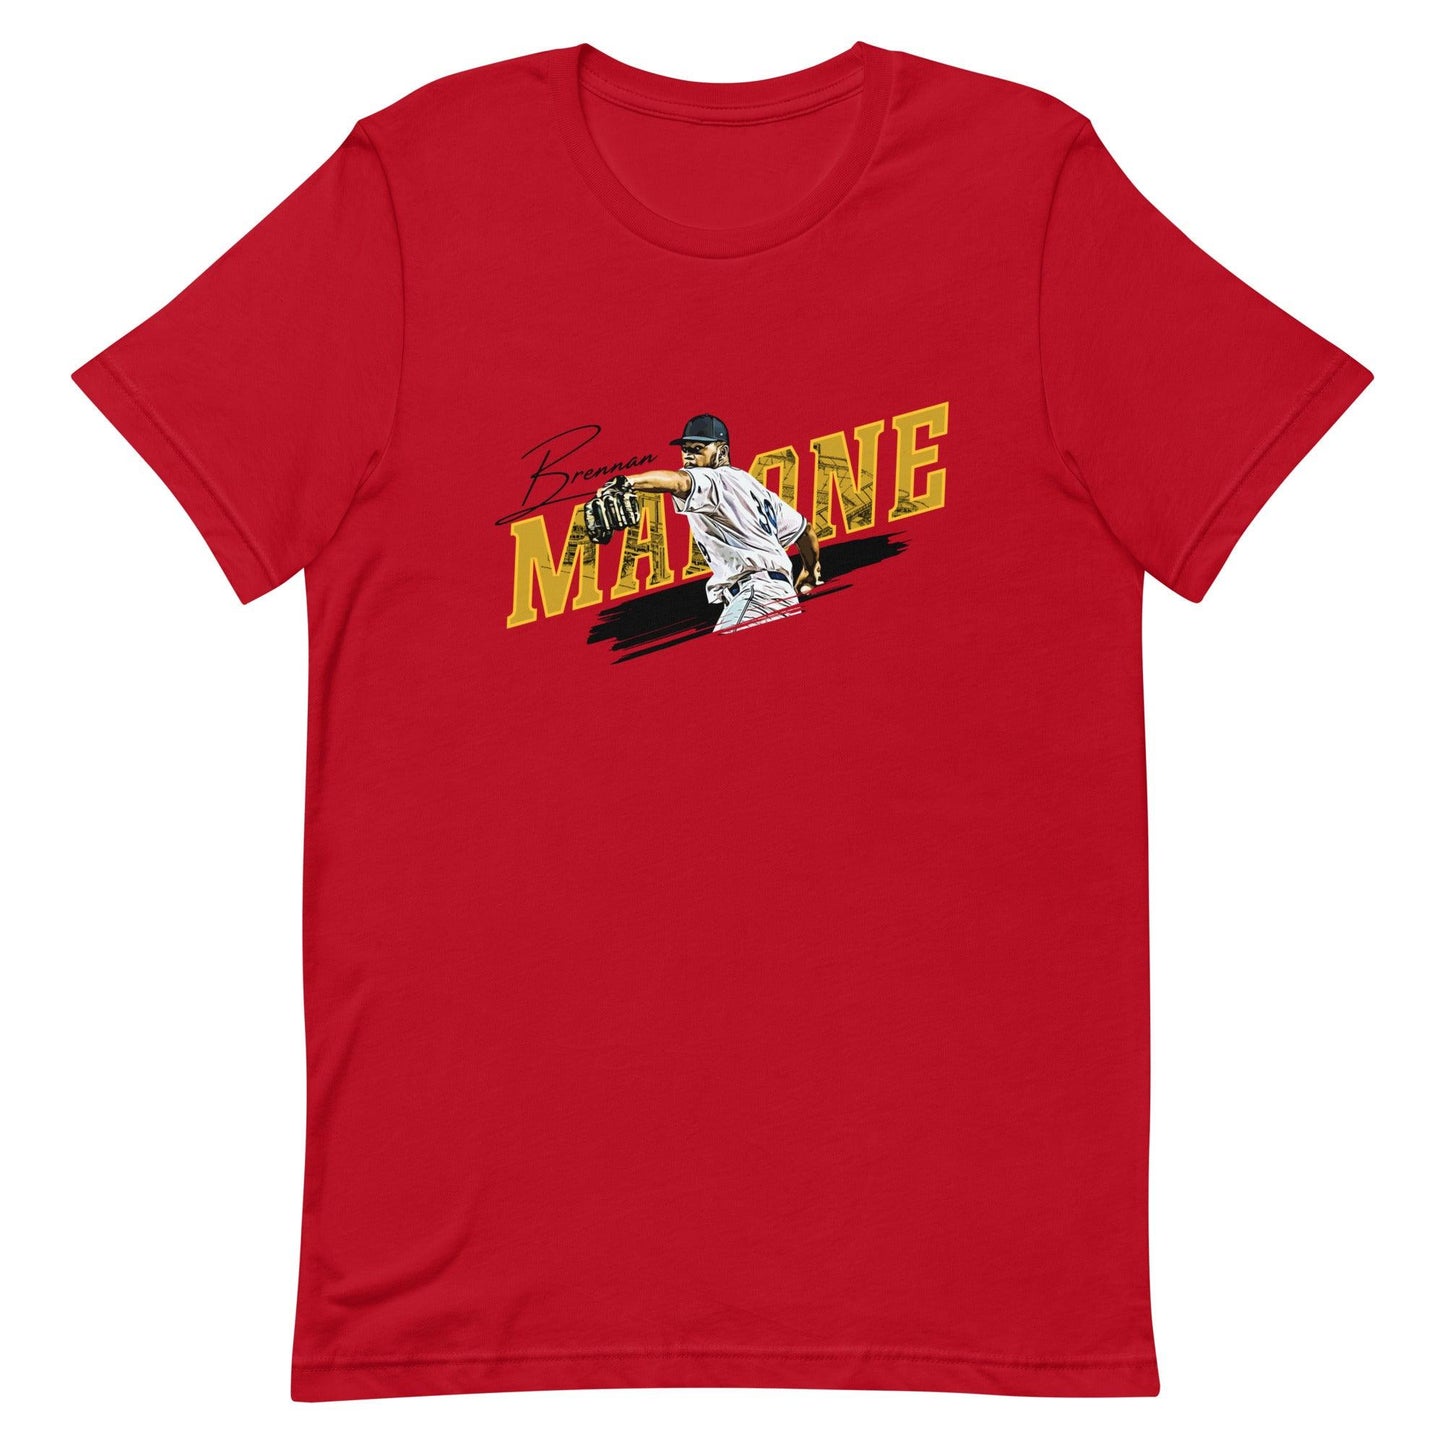 Brennan Malone "Windup" t-shirt - Fan Arch